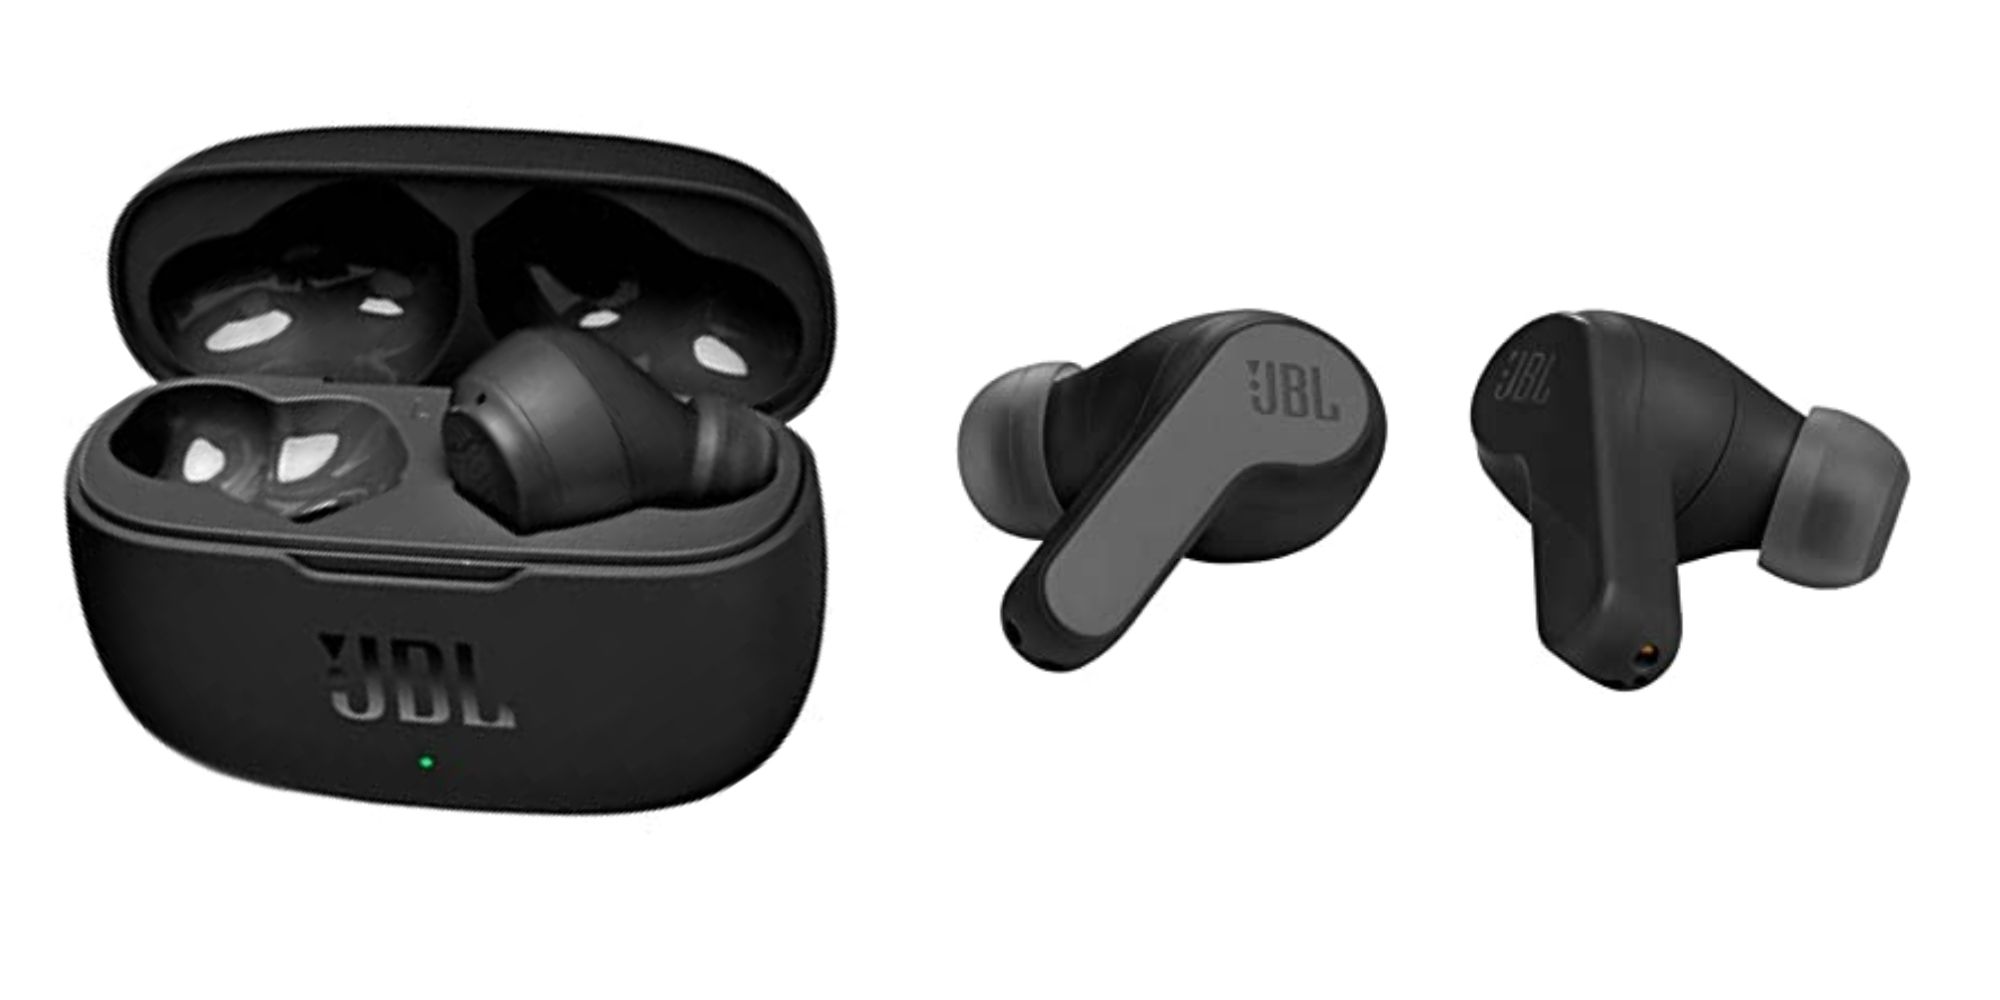 JBL True Wireless Earbuds from Amazon